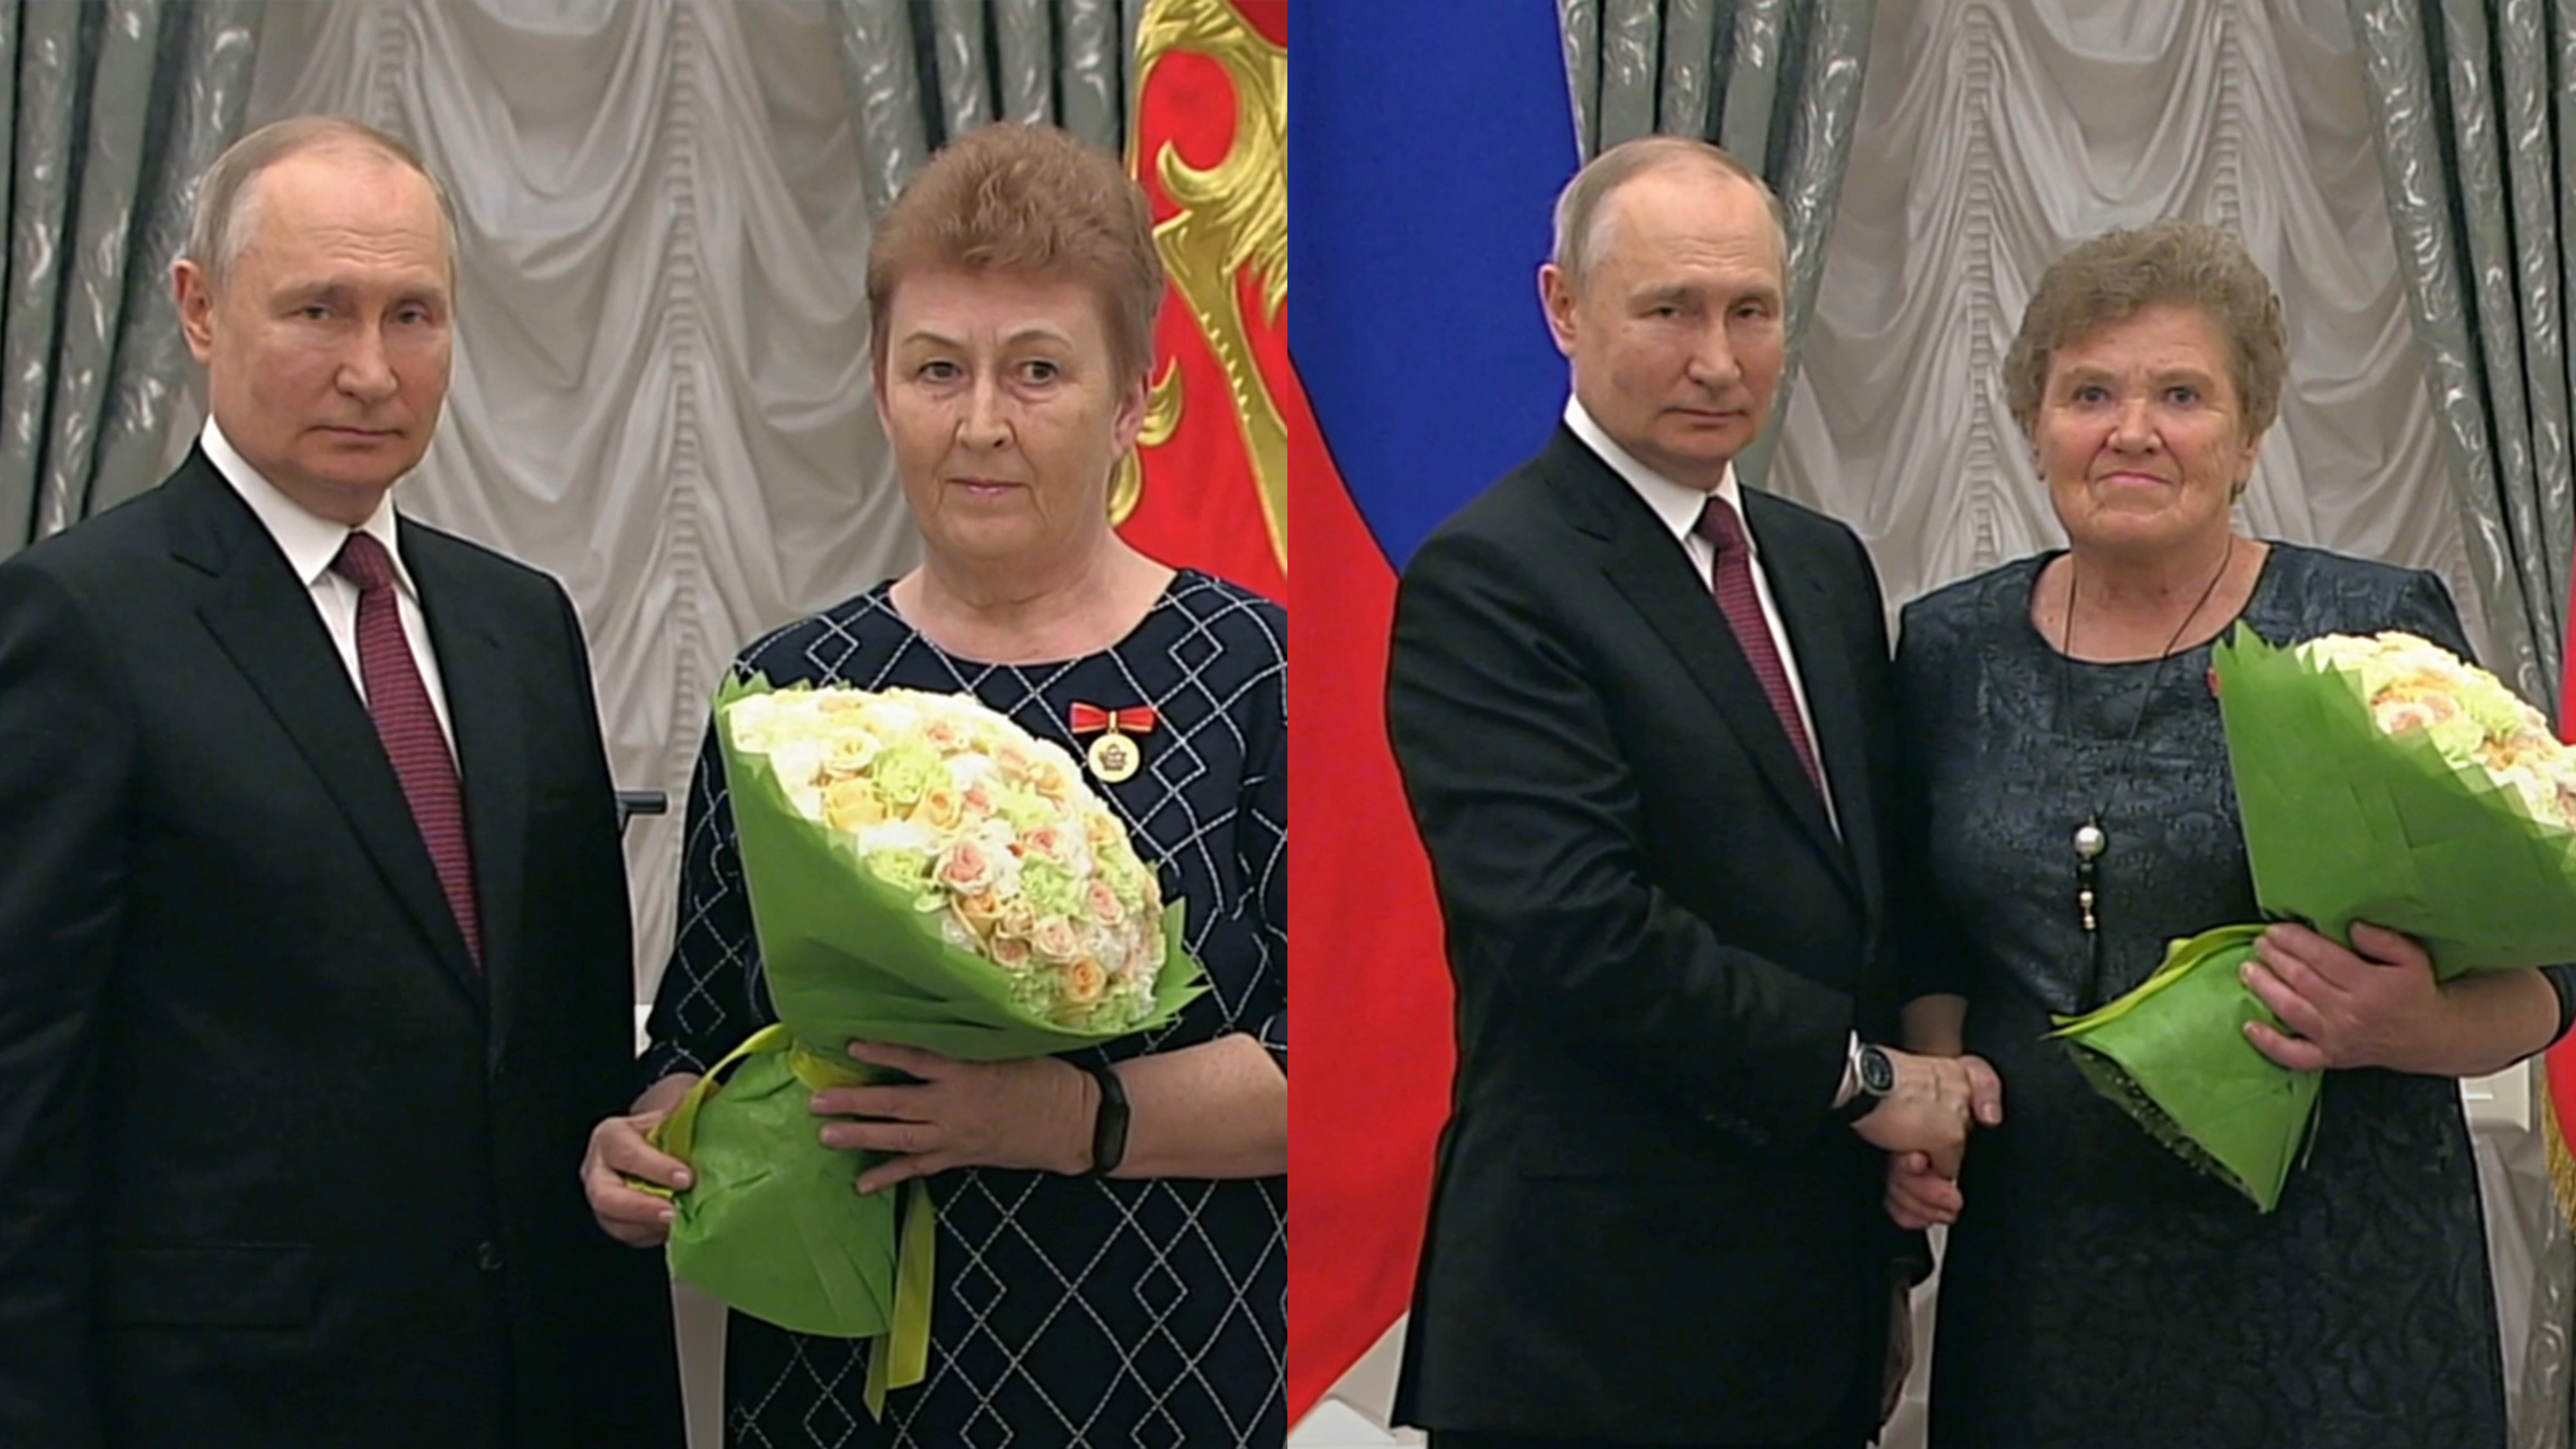 Президент России Владимир Путин наградил учителей из Кировской области почетными знаками